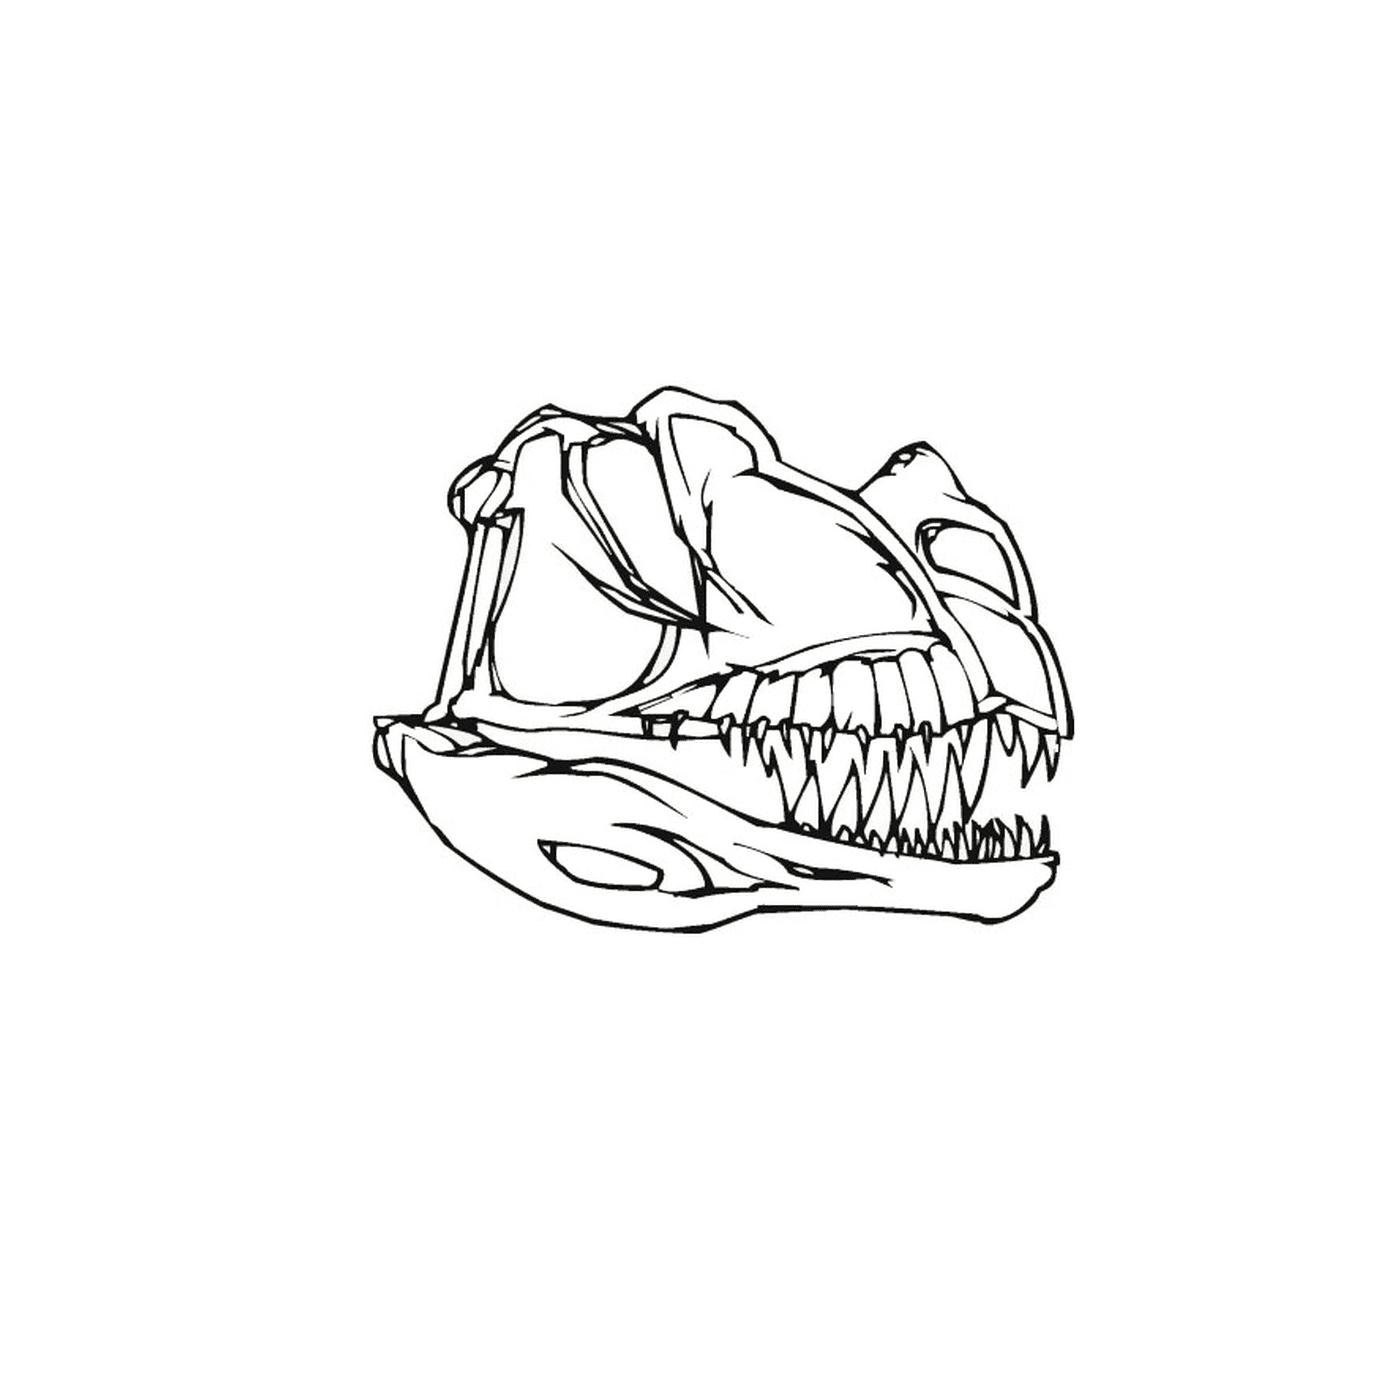  The skull of a dinosaur with teeth 